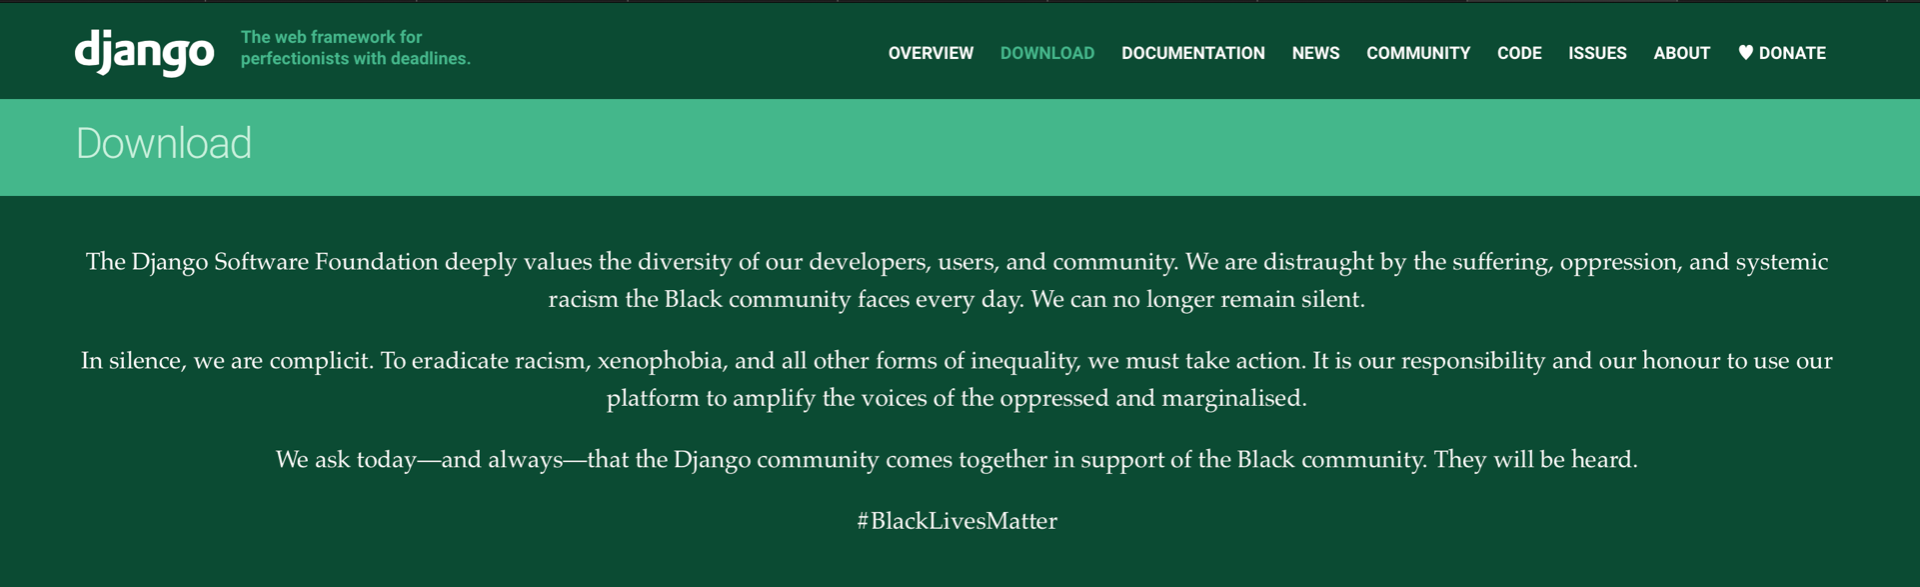 Django Project Black Lives Matter Message Screenshot 